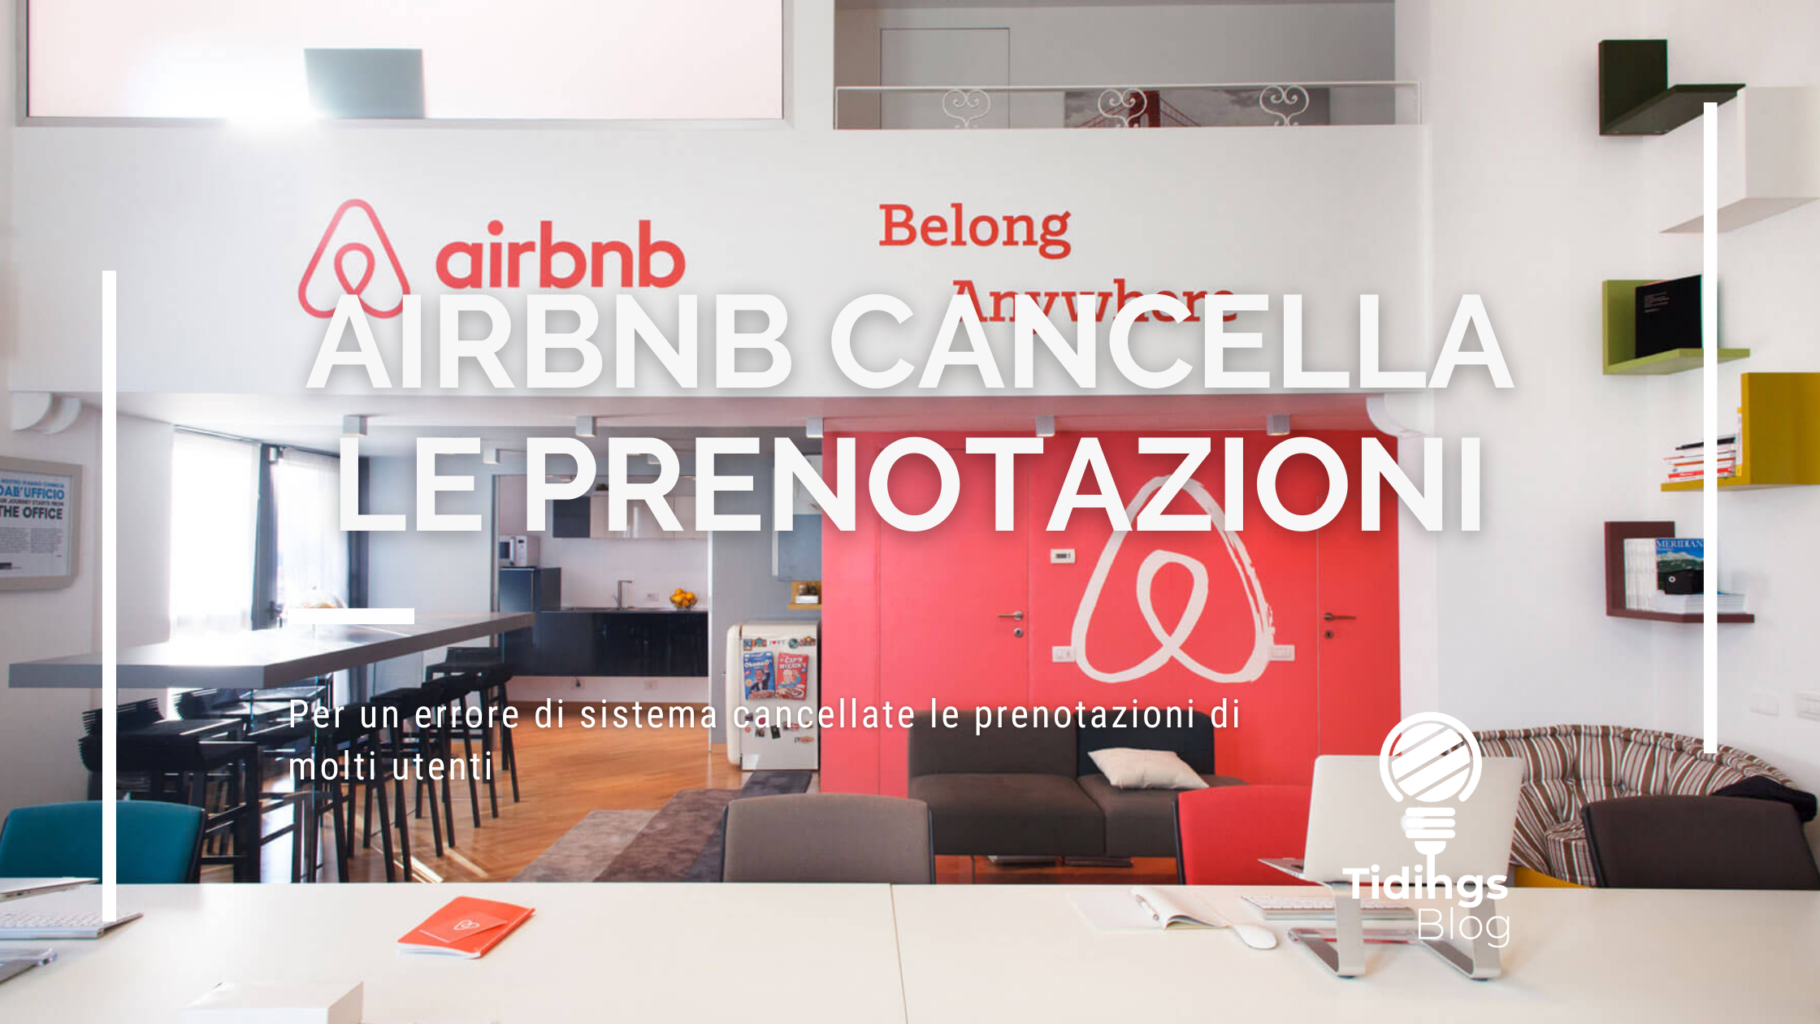 airbnb cancella prenotazioni